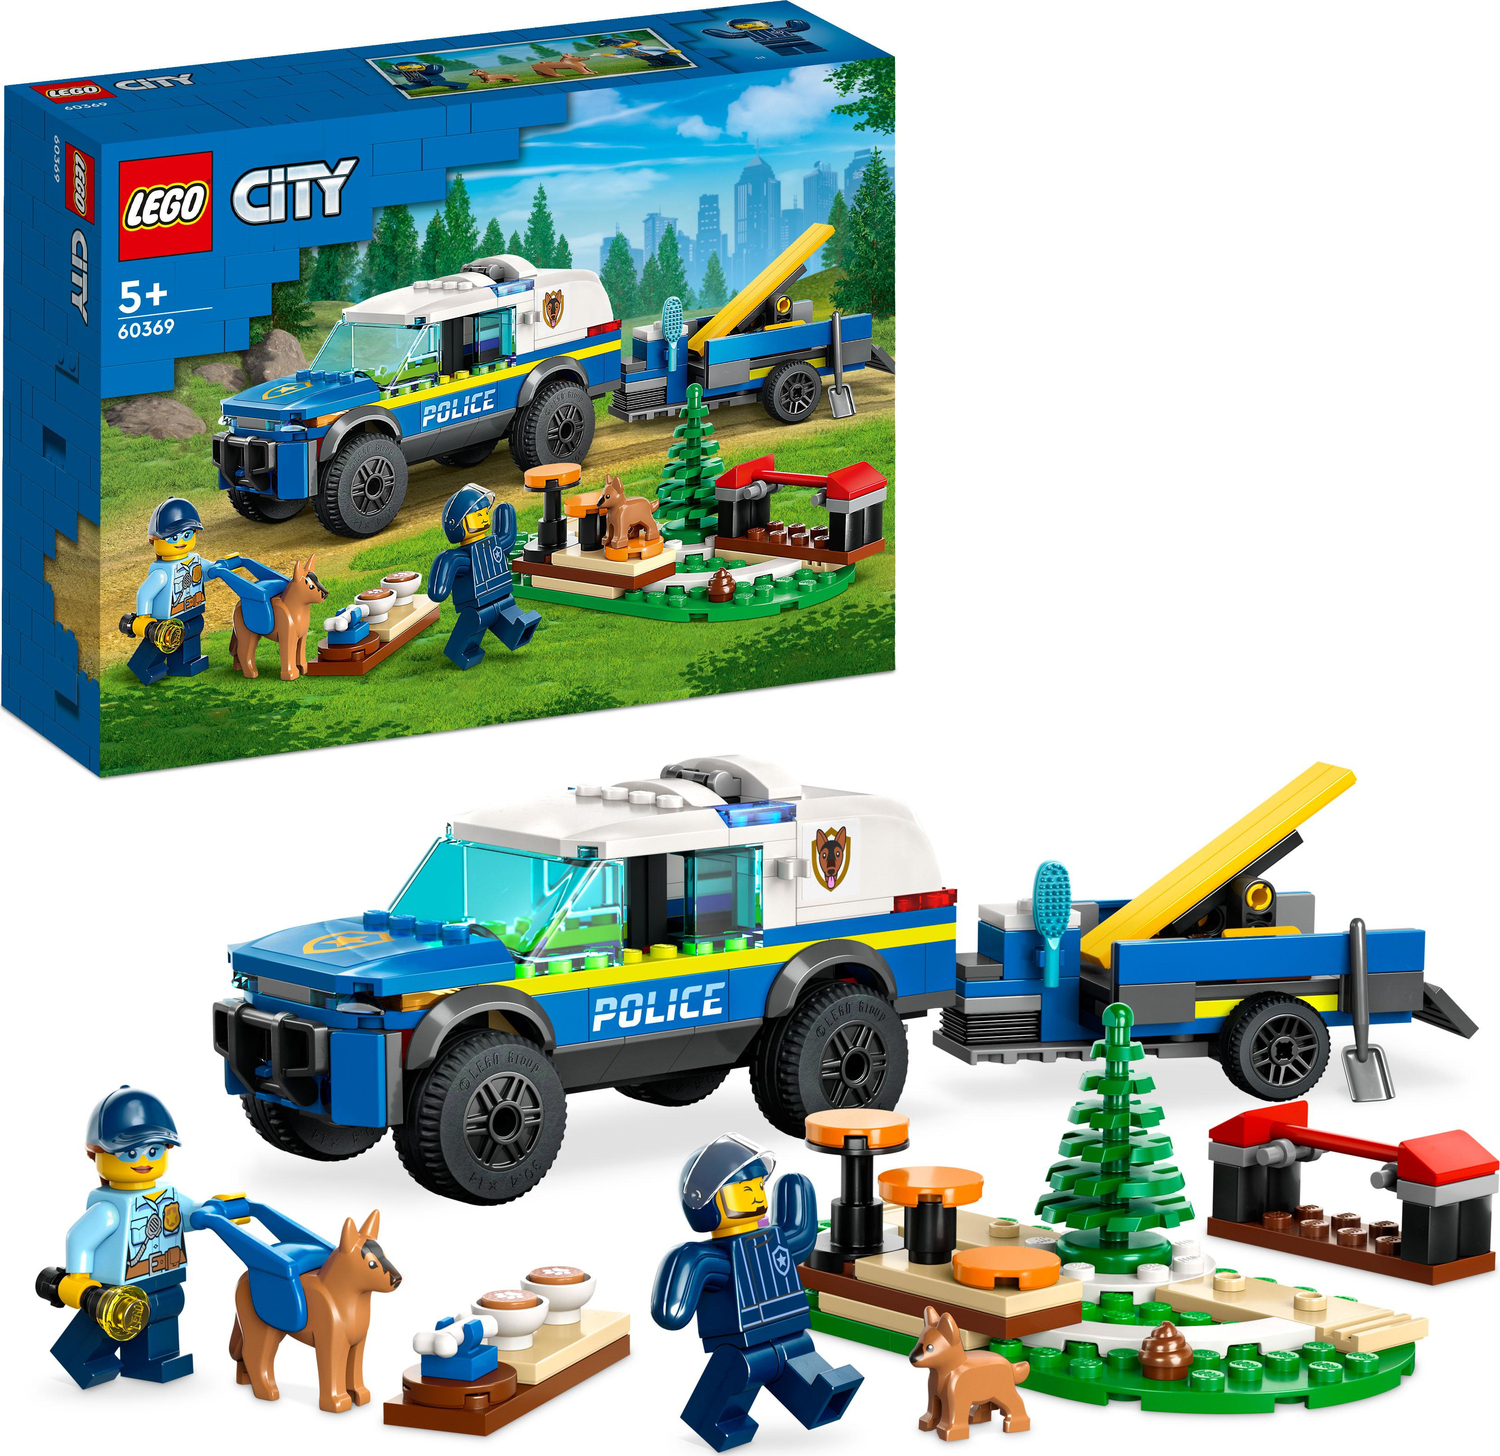 60369 Police Training LEGO City -